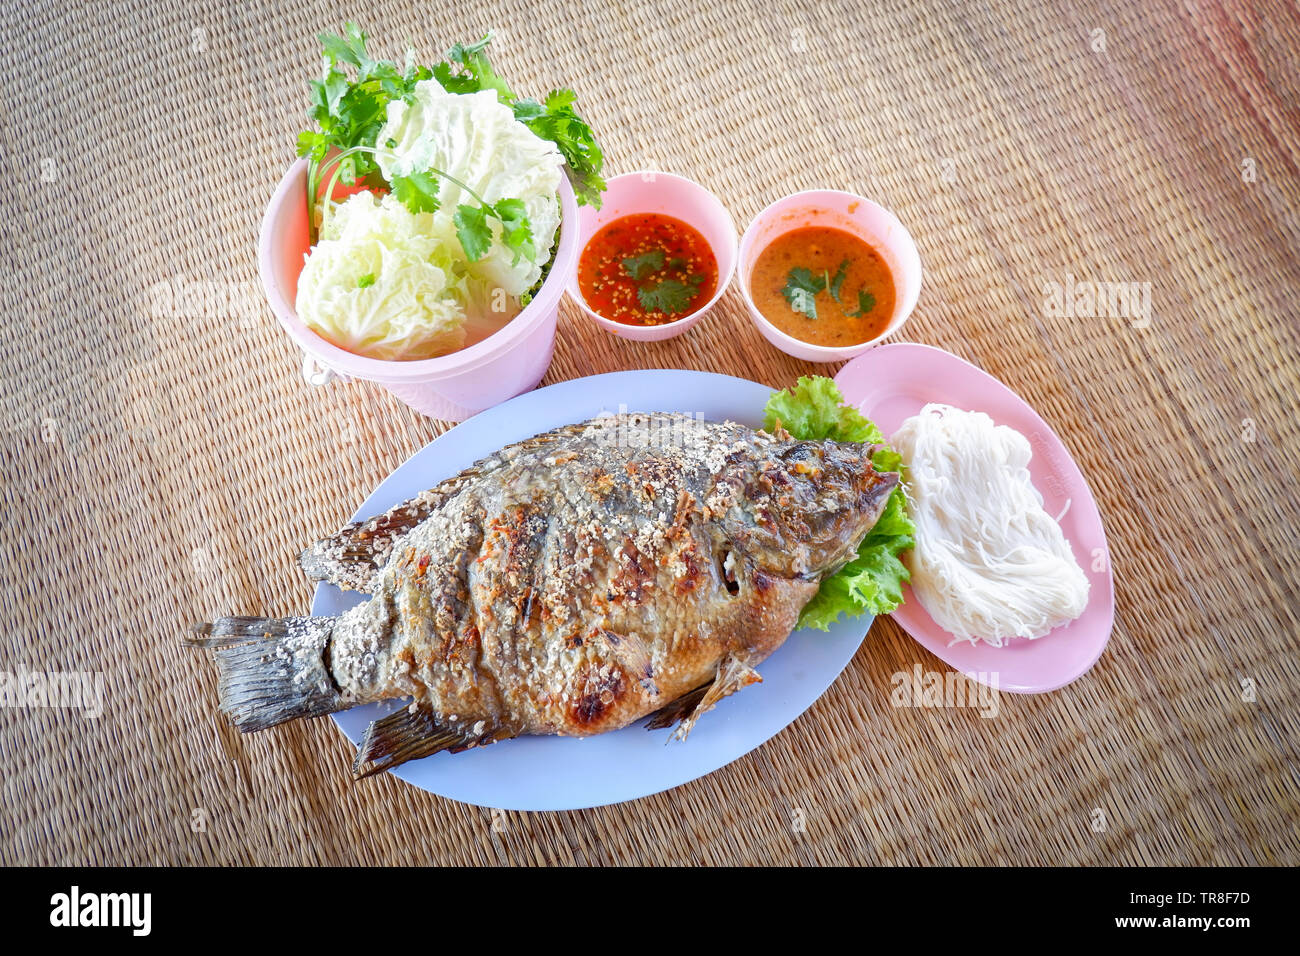 Jeu de poisson Tilapia grillé avec du sel et sauce chili de légumes frais dans un style thaï asiatique sur la plaque alimentaire poissons / brûler Banque D'Images